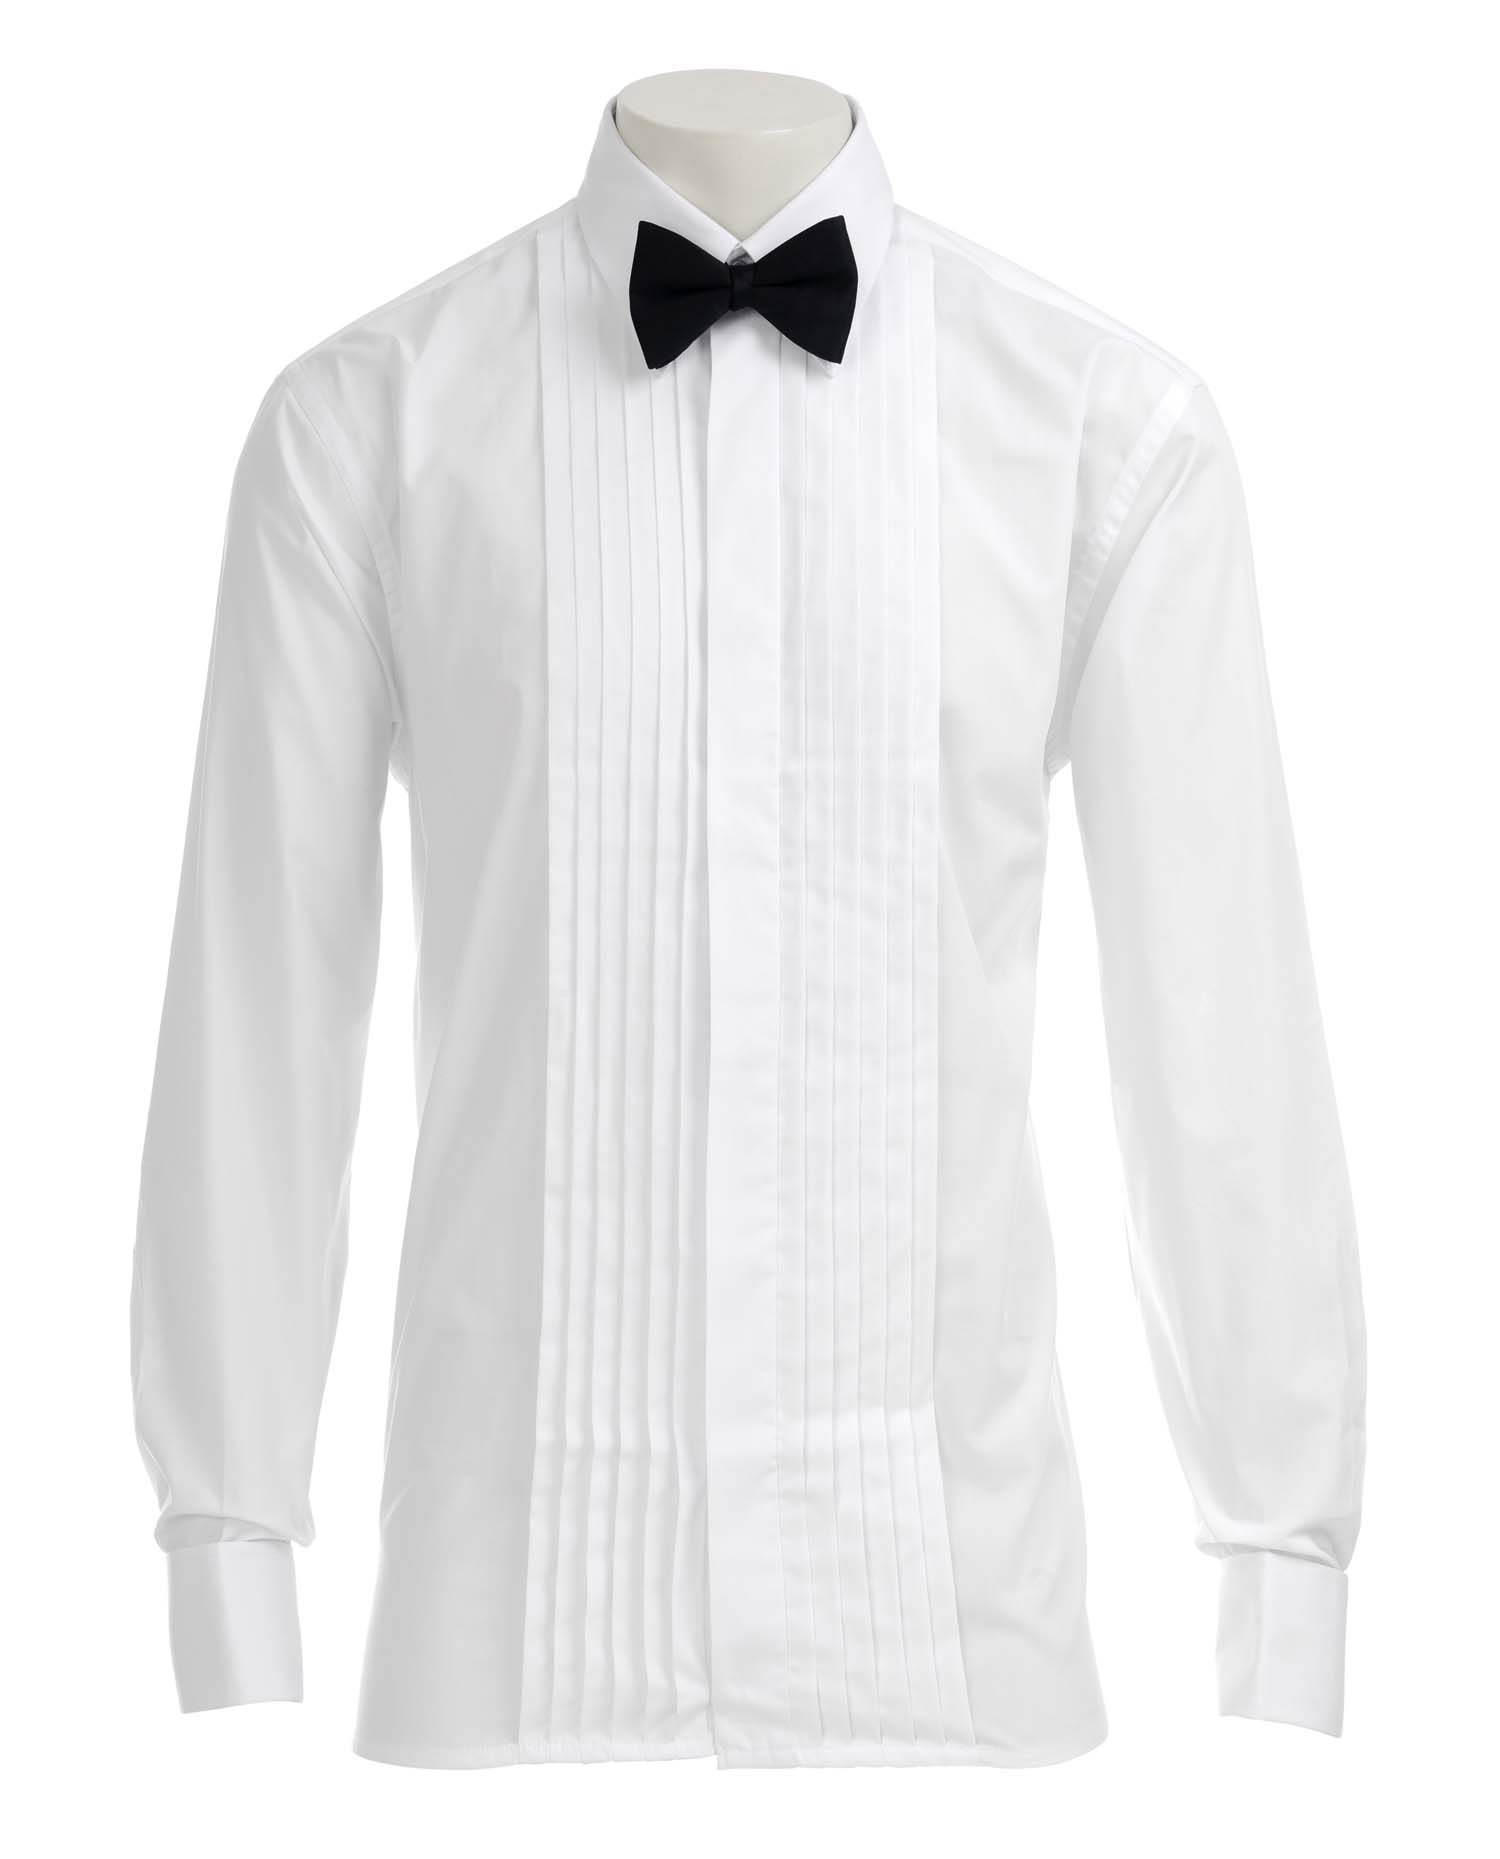 Black Bow Tie White Shirt Black Bow Tie White Shirt